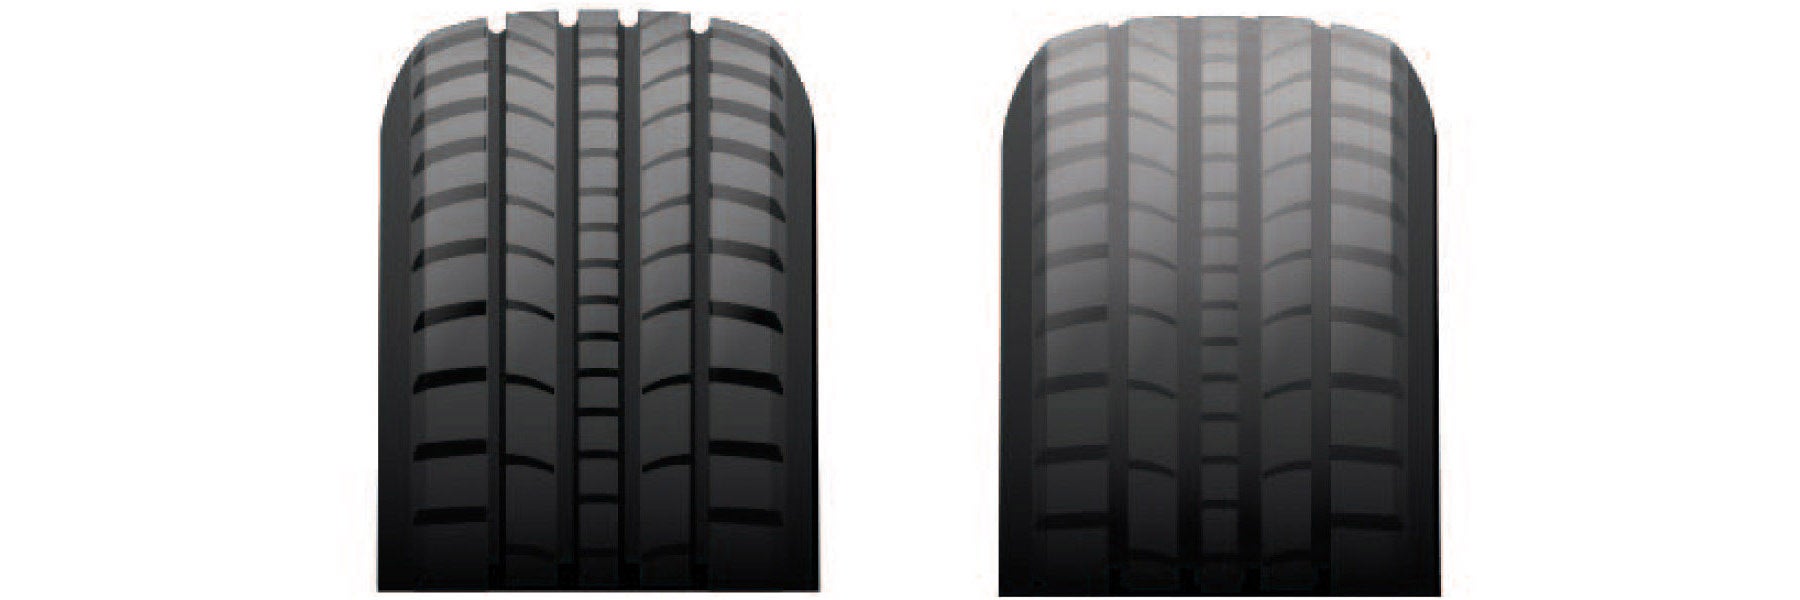 Tire tread depth comparison at Doral Kia in Miami FL